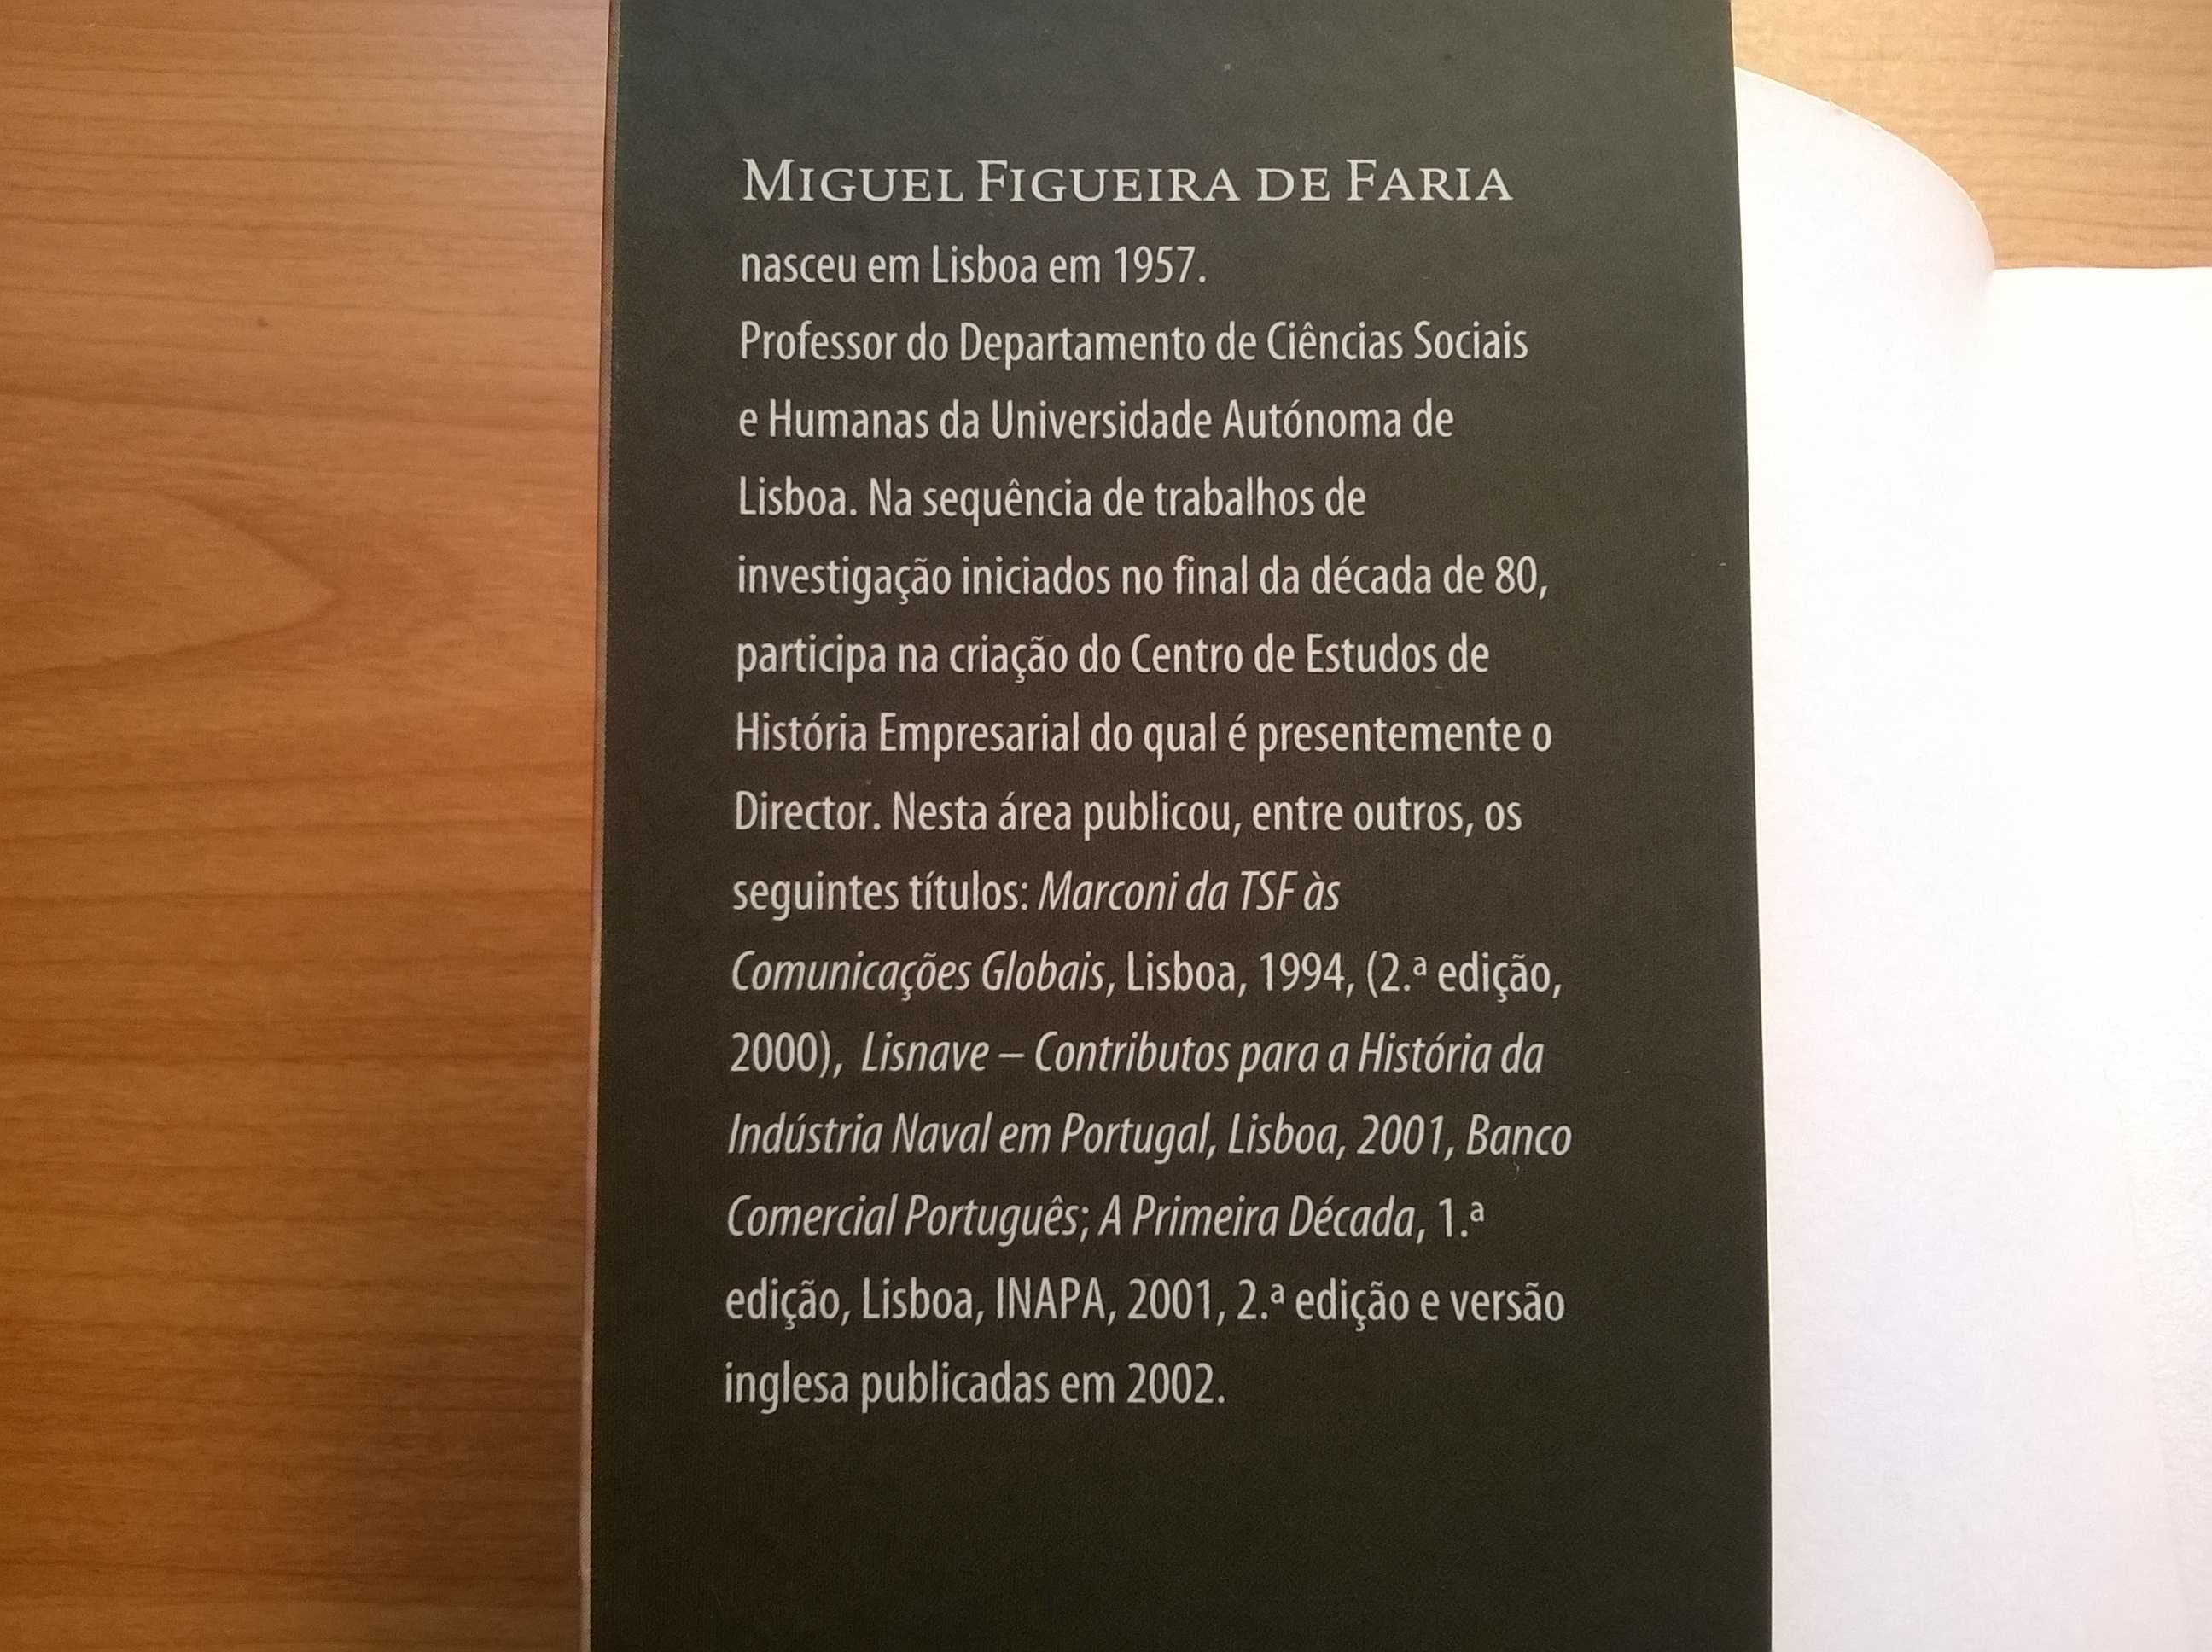 Alfredo da Silva (Biografia) - Mig. Figueira de Faria (ver dedicatória